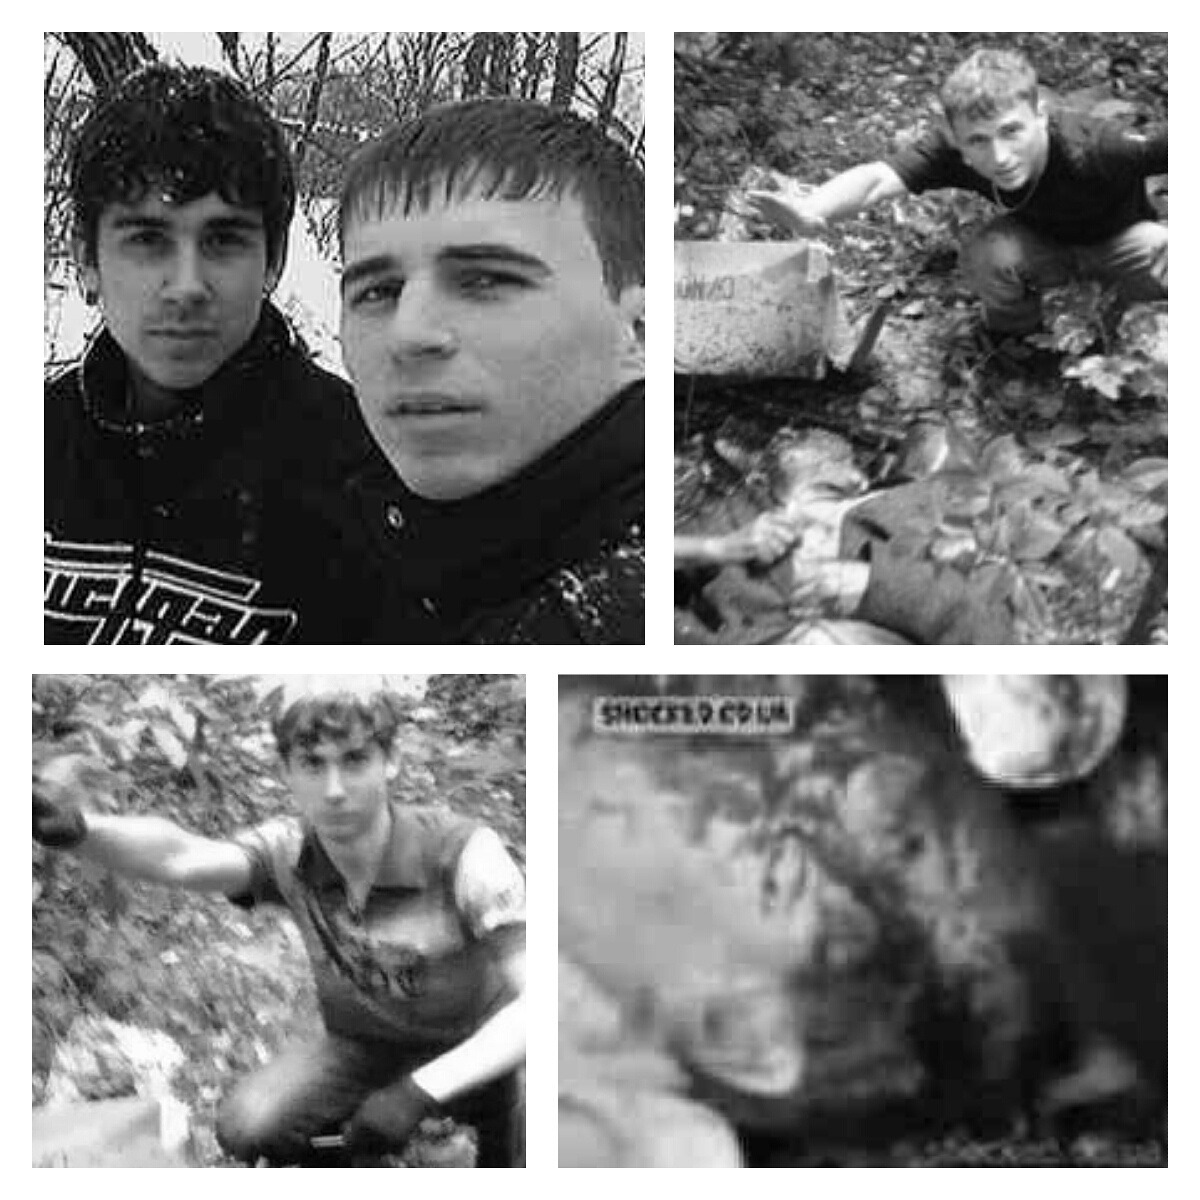 Entdecken Sie die abscheulichen Mörder: die Dnepropetrovsk Maniacs.